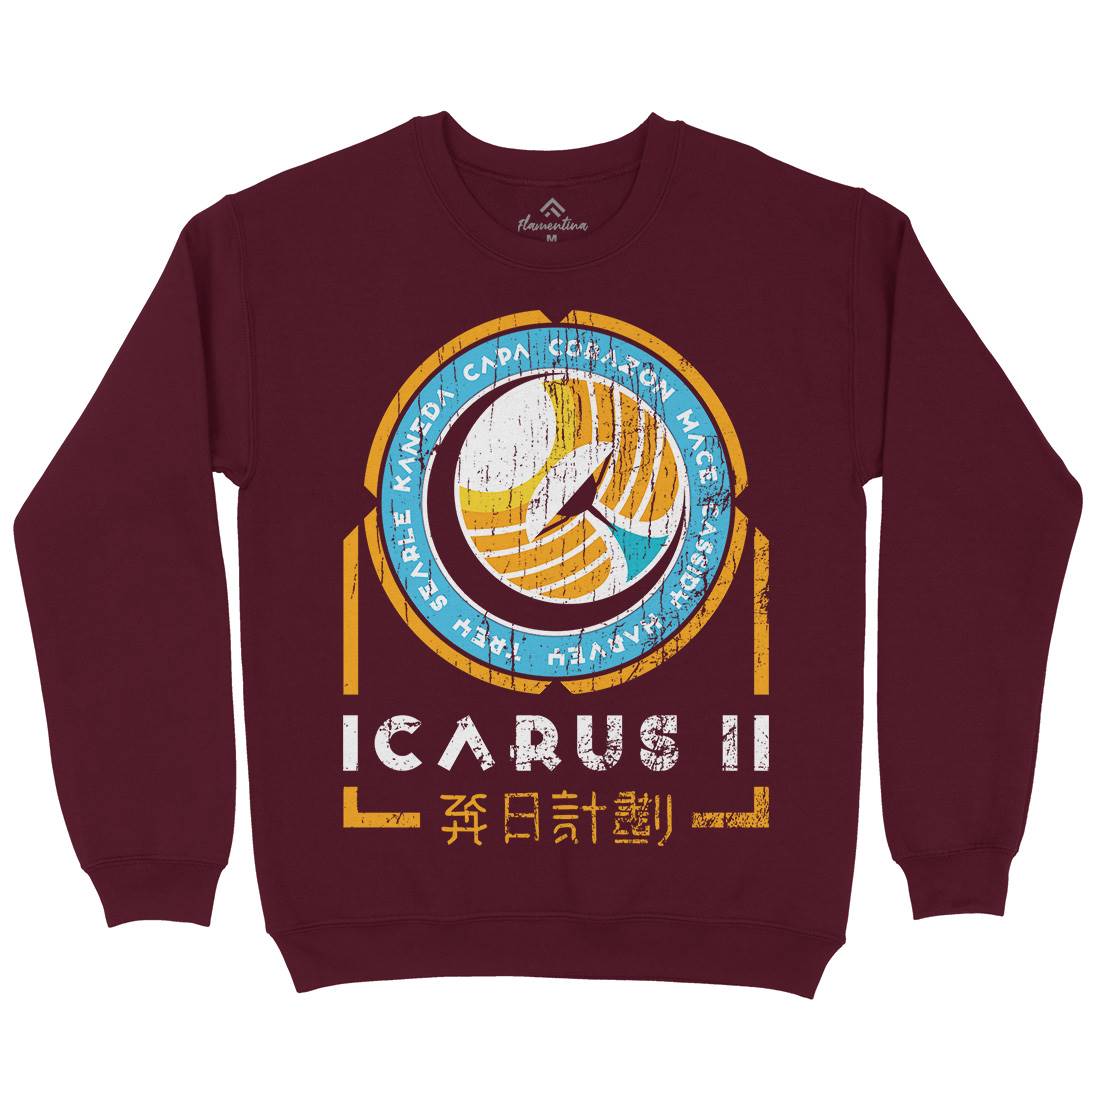 Icarus Ii Kids Crew Neck Sweatshirt Space D233